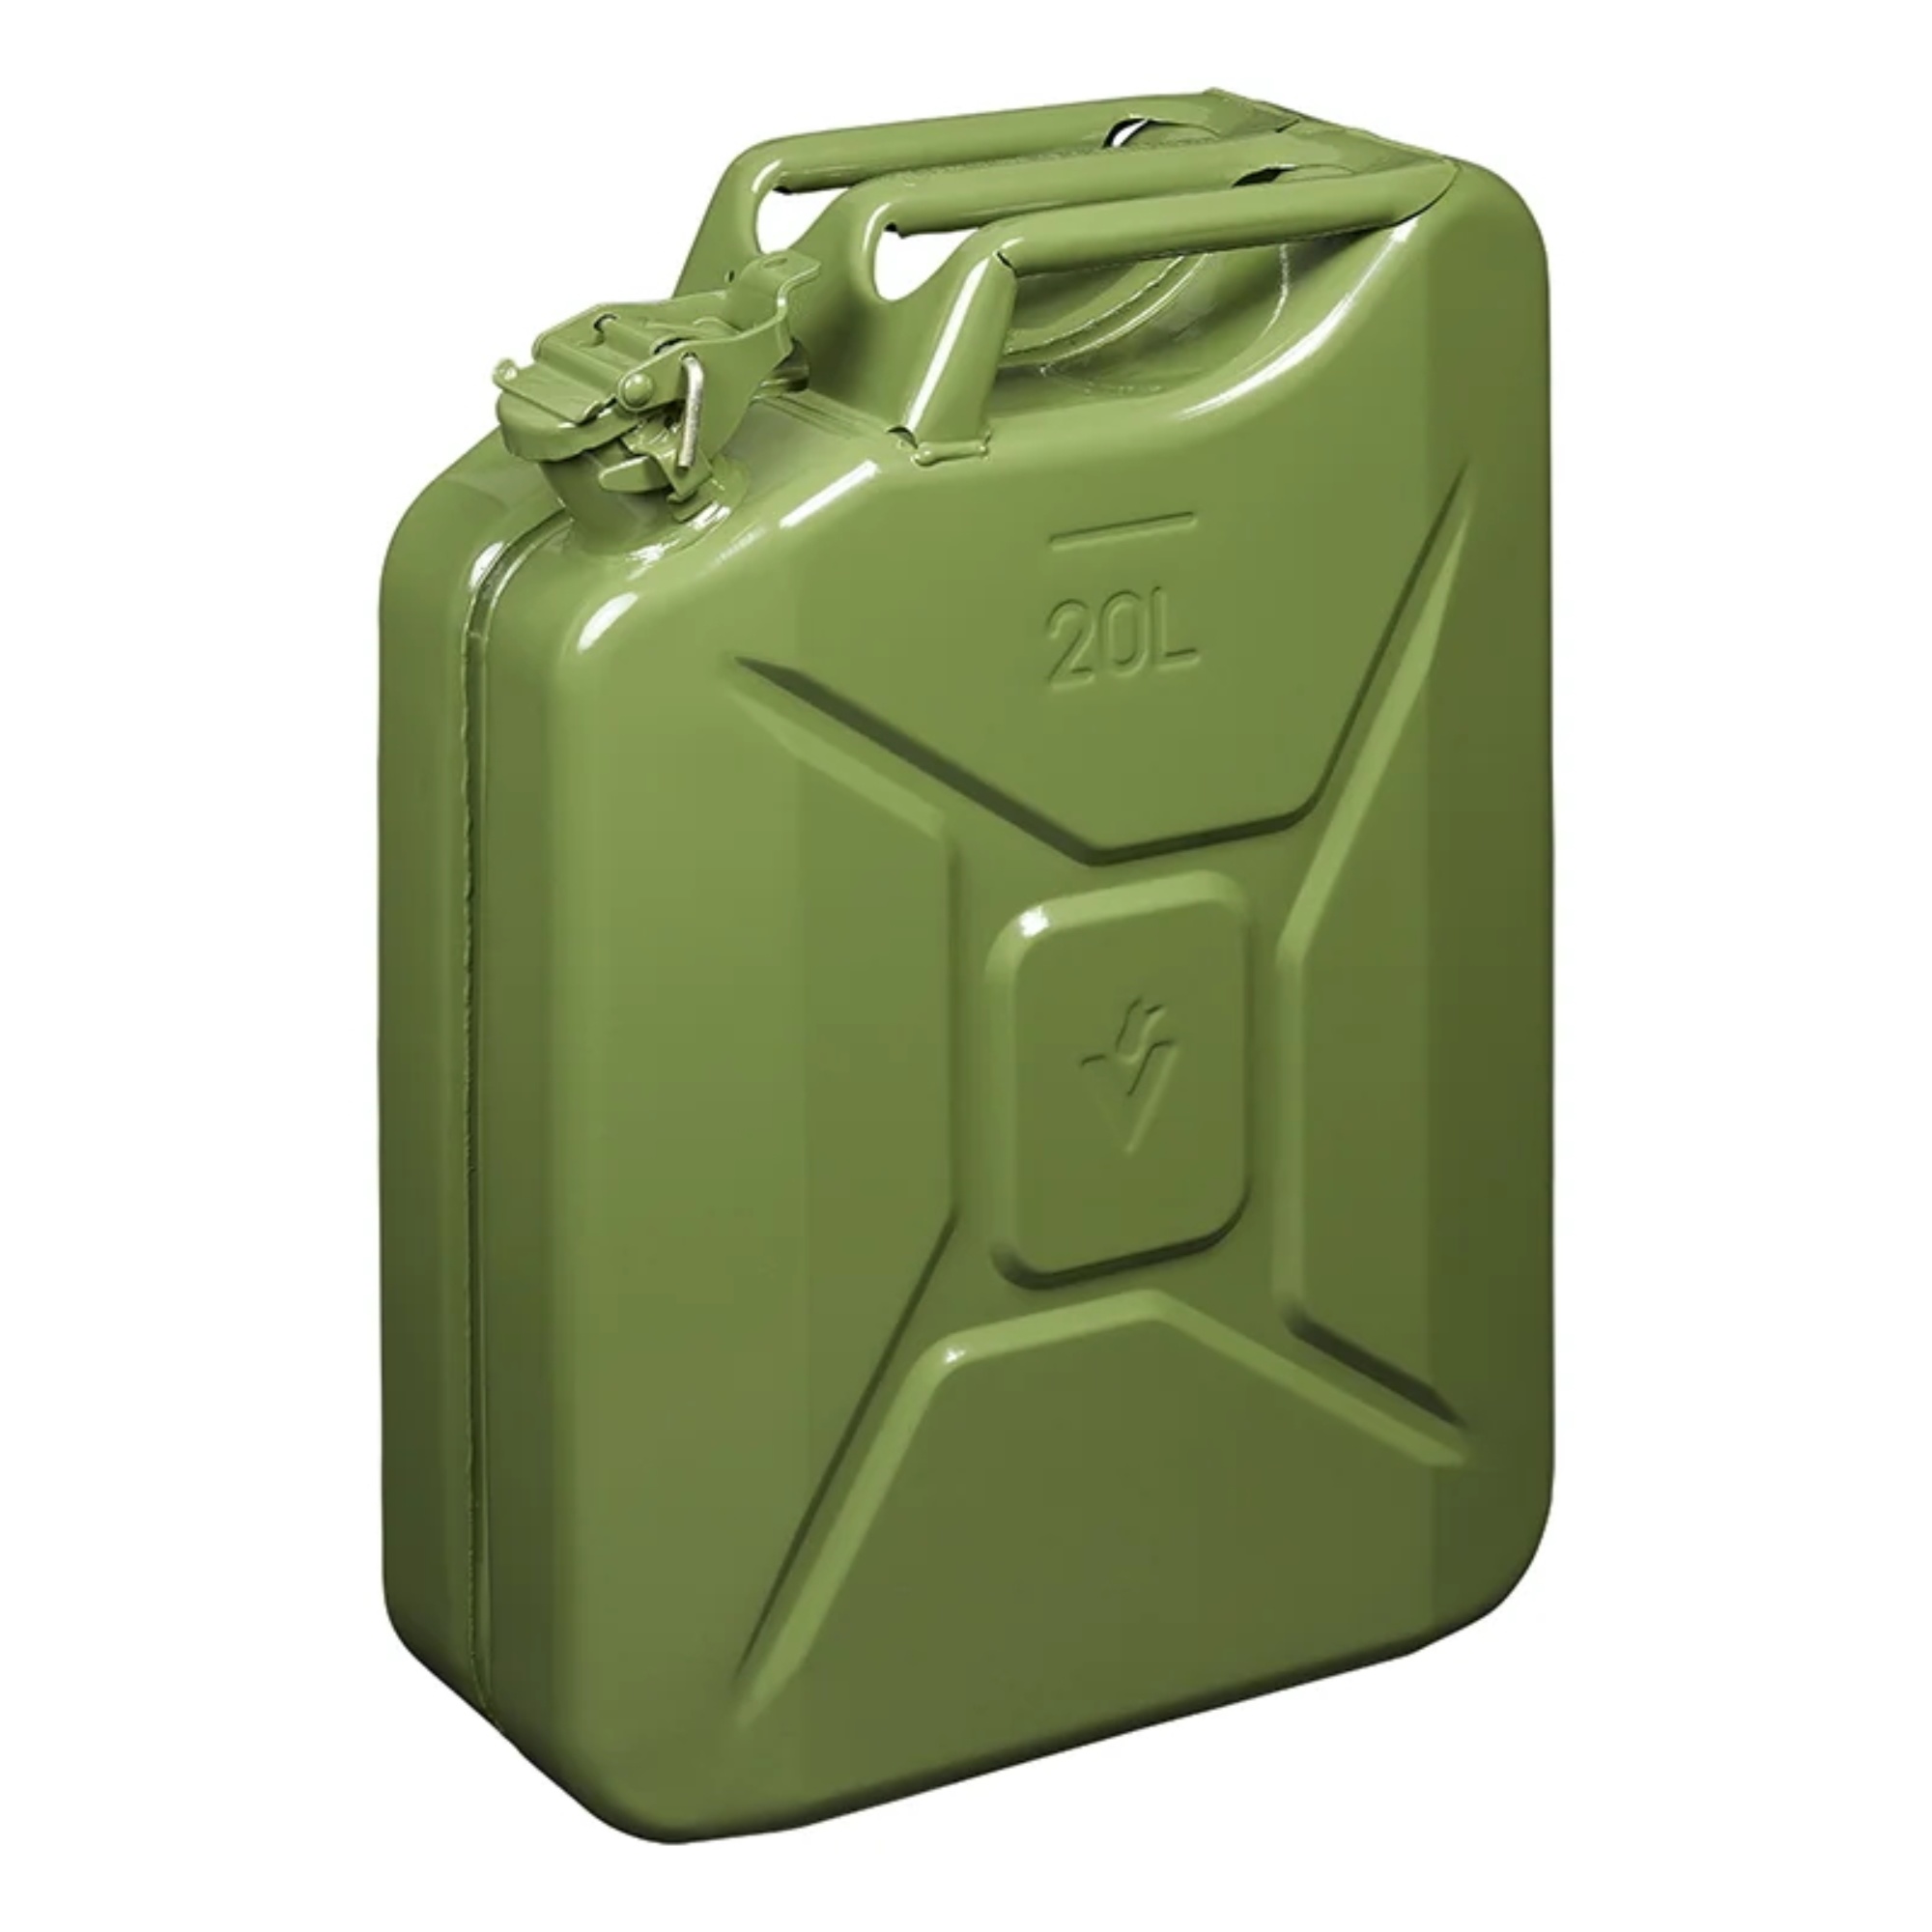 Pro Plus Jerrycan 20 liter - Metaal - Groen - UN- en TÜV/GS Gekeurd